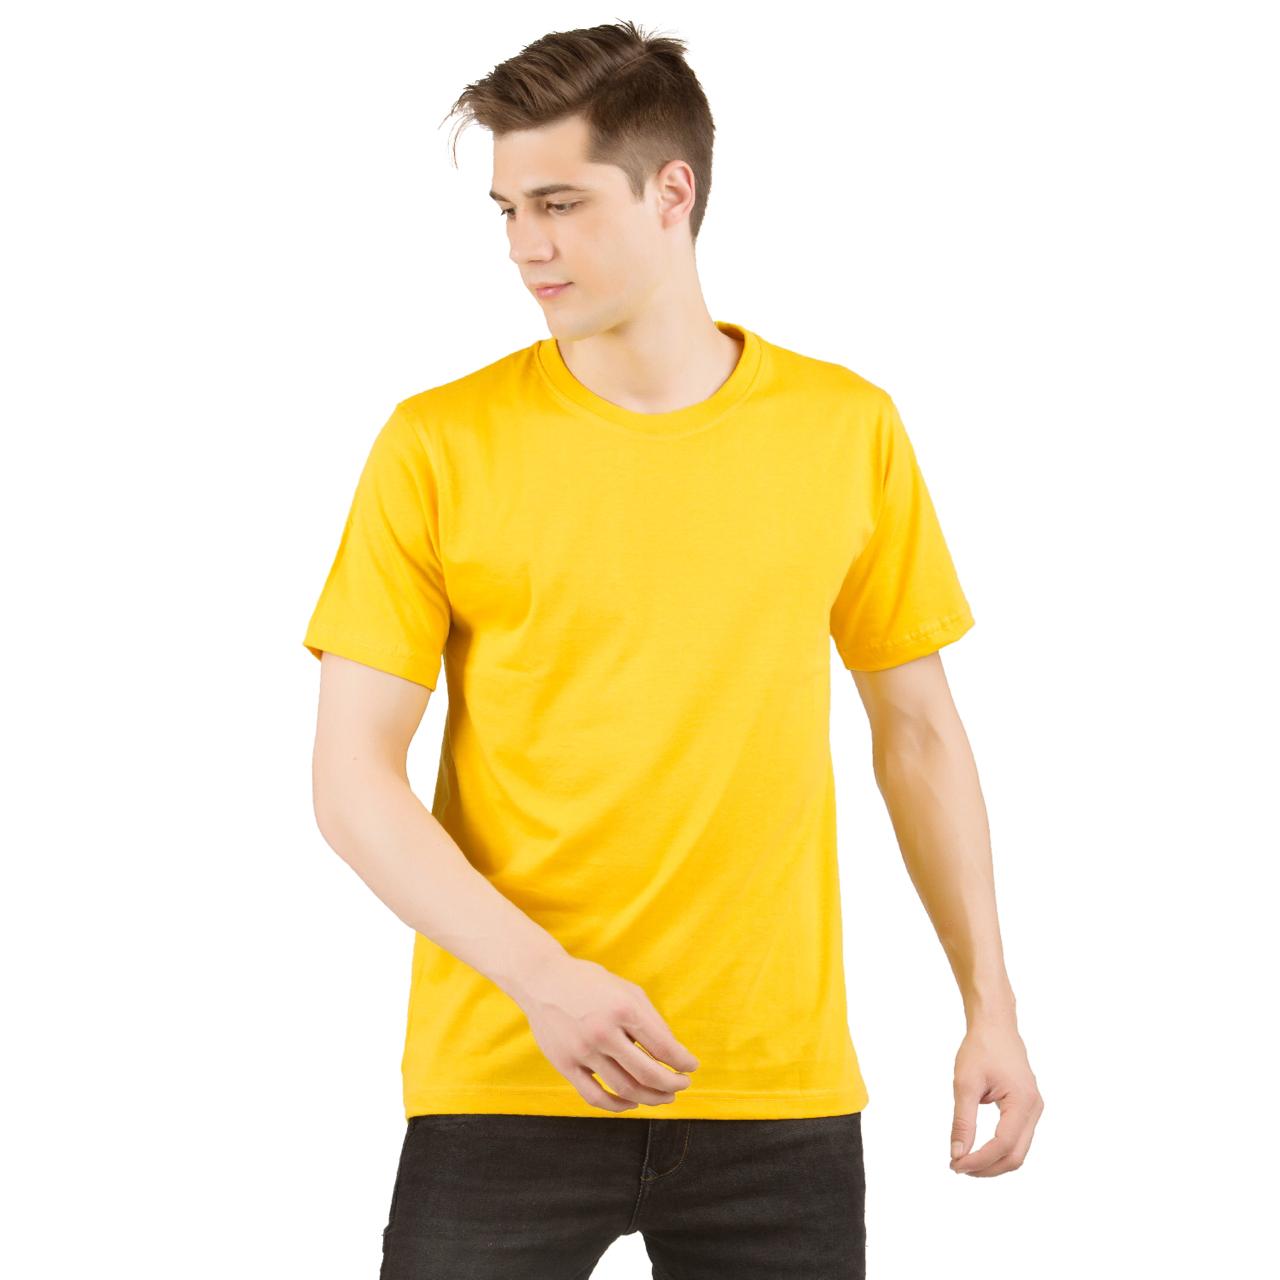 plain t shirt golden yellow